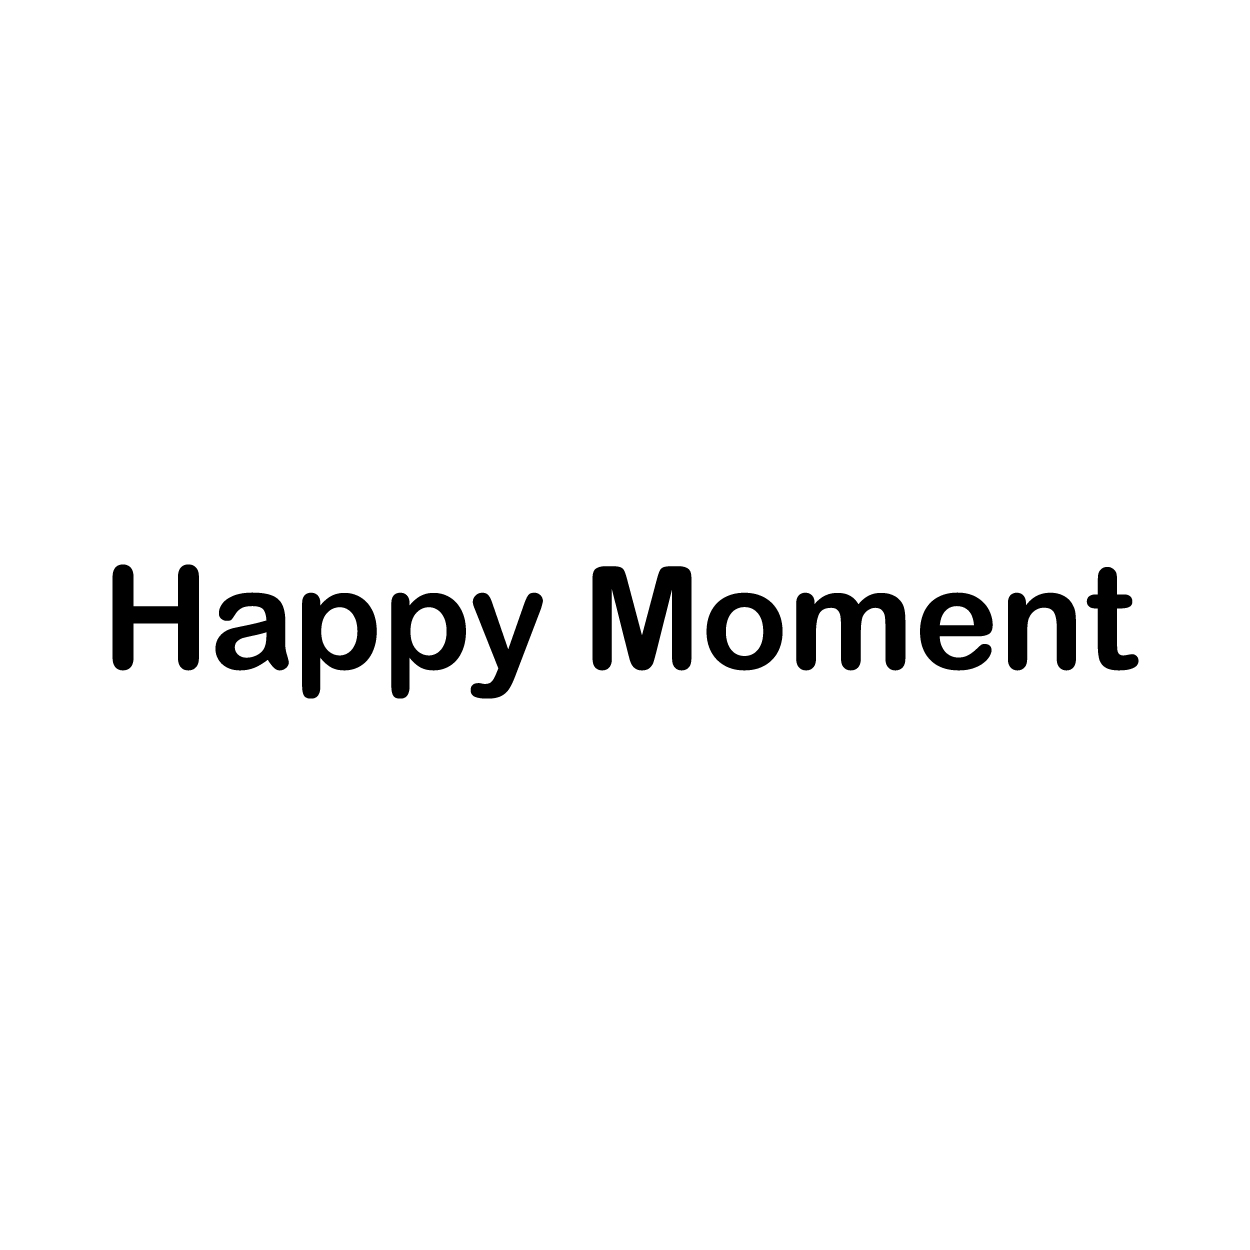 Happy Moment